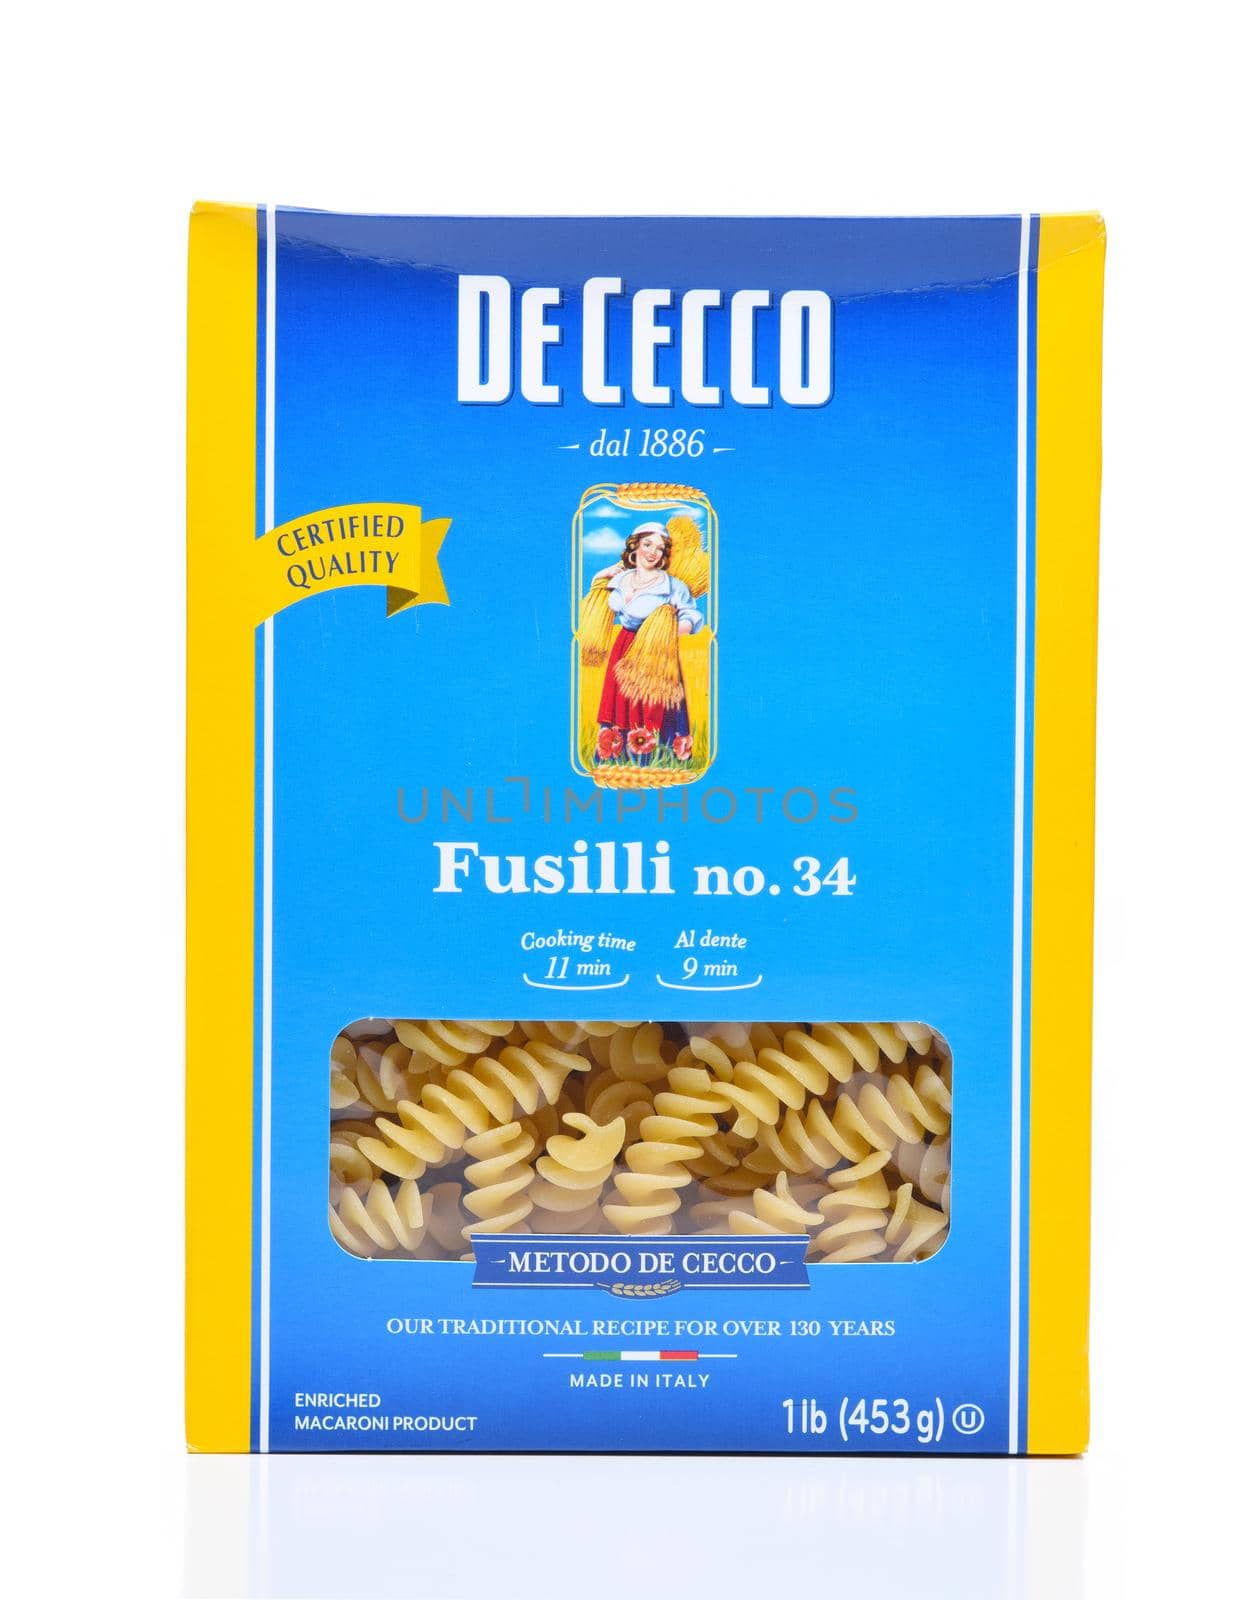 A box of De Cecco Fusilli Pasta by sCukrov